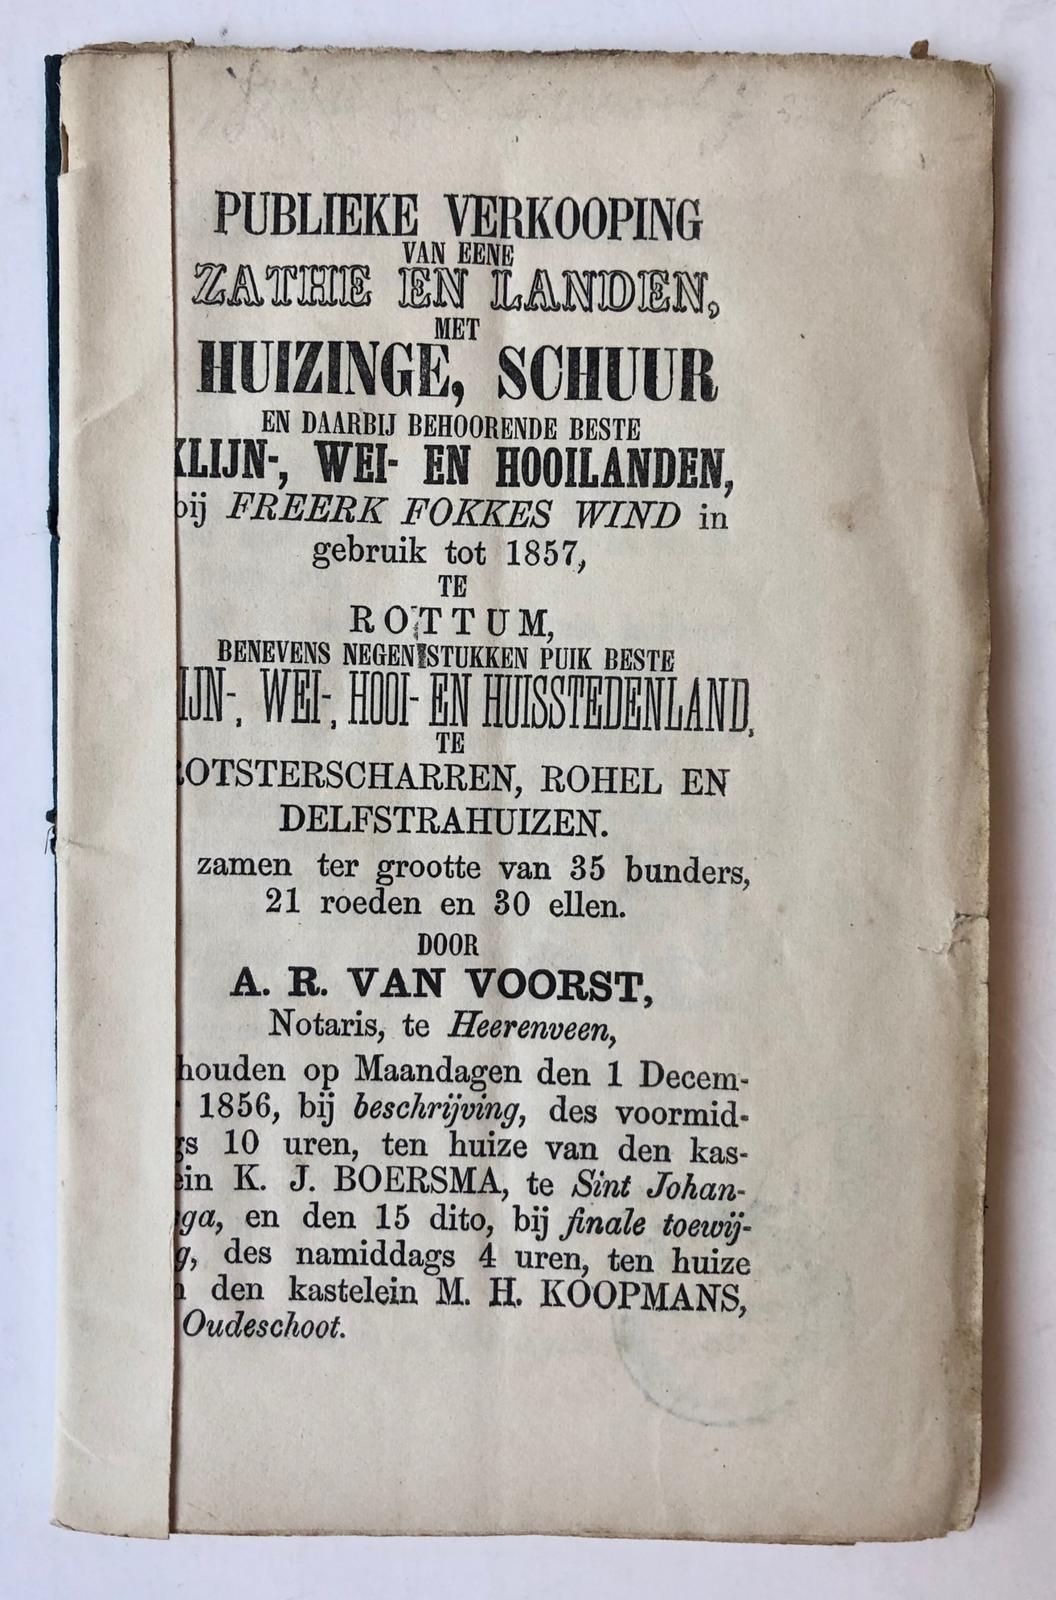 [VEILINGBOEKJE ONROEREND GOED] - [Veilingboekje betreffende onroerend goed Rottum, Friesland] Publieke Verkooping van een Zathe en landen te Rottum, Notaris A. R. van Voorst te Heerenveen, 1856.